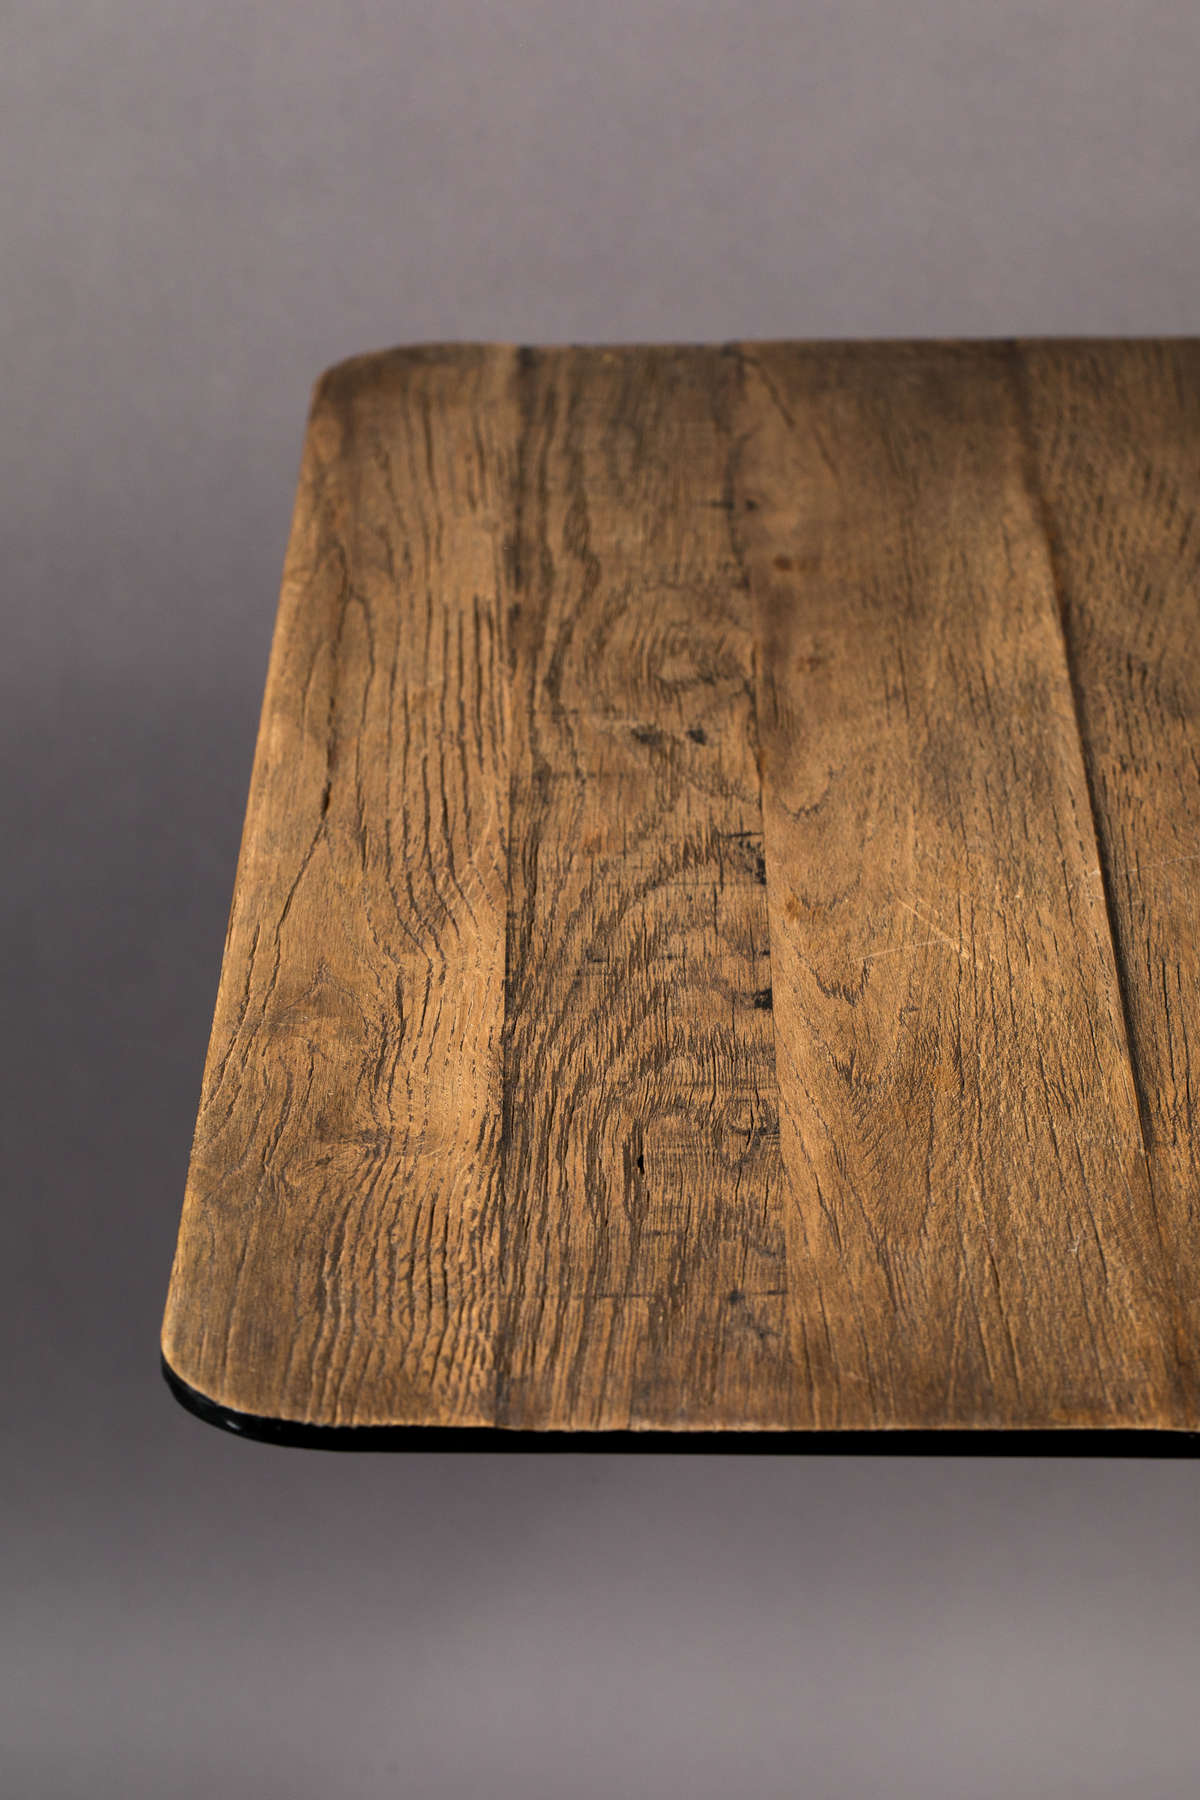 BRAZA SQUARE bistro table in oak veneer